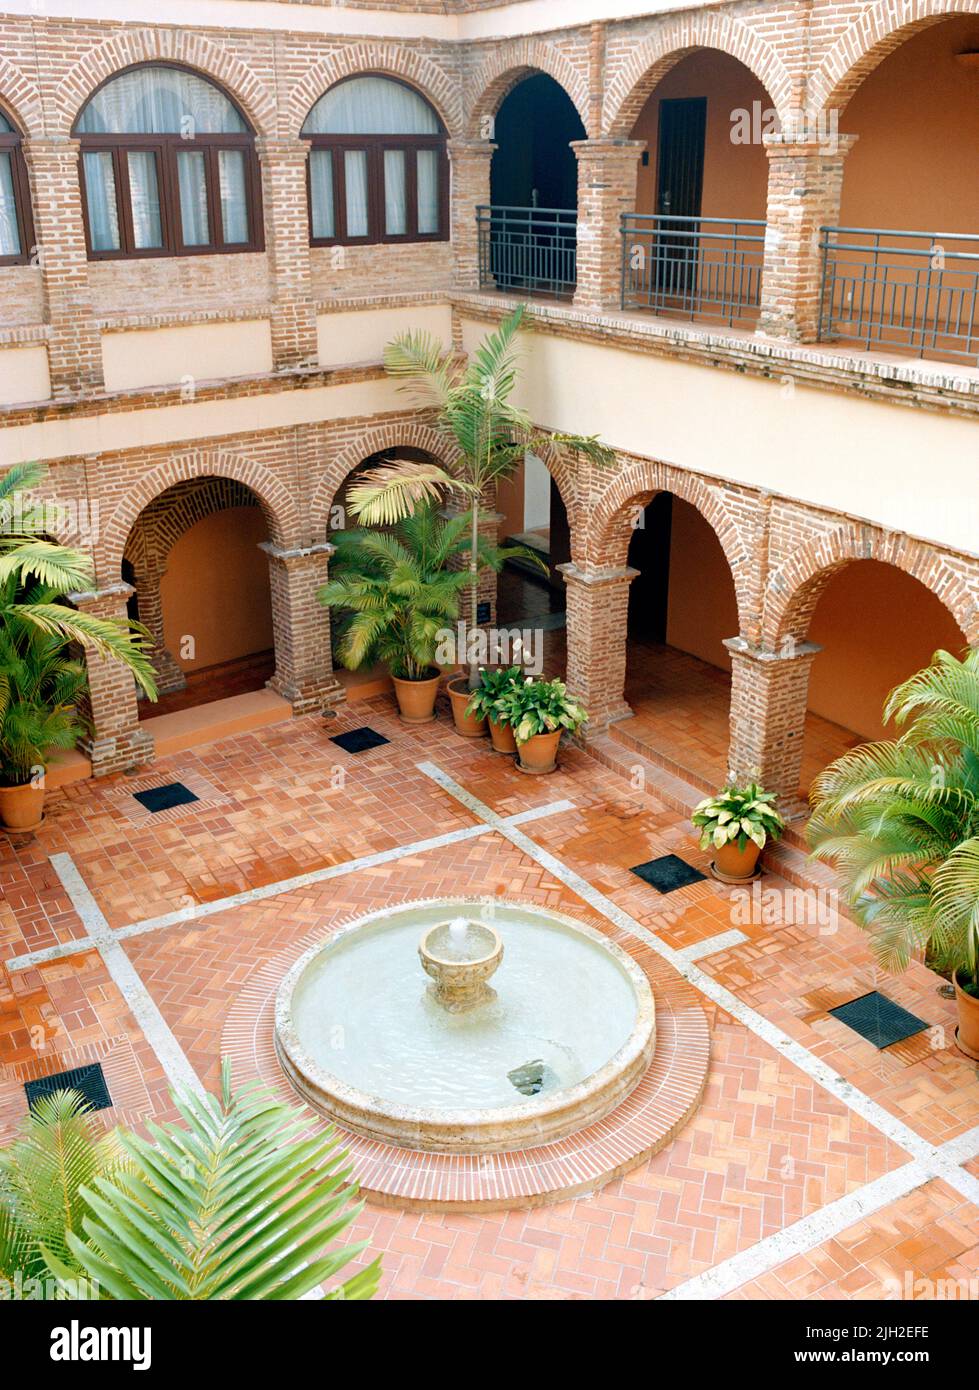 The courtyard at the Sofitel Nicolas de Ovando Hotel. Santo Domingo, Dominican Republic Stock Photo